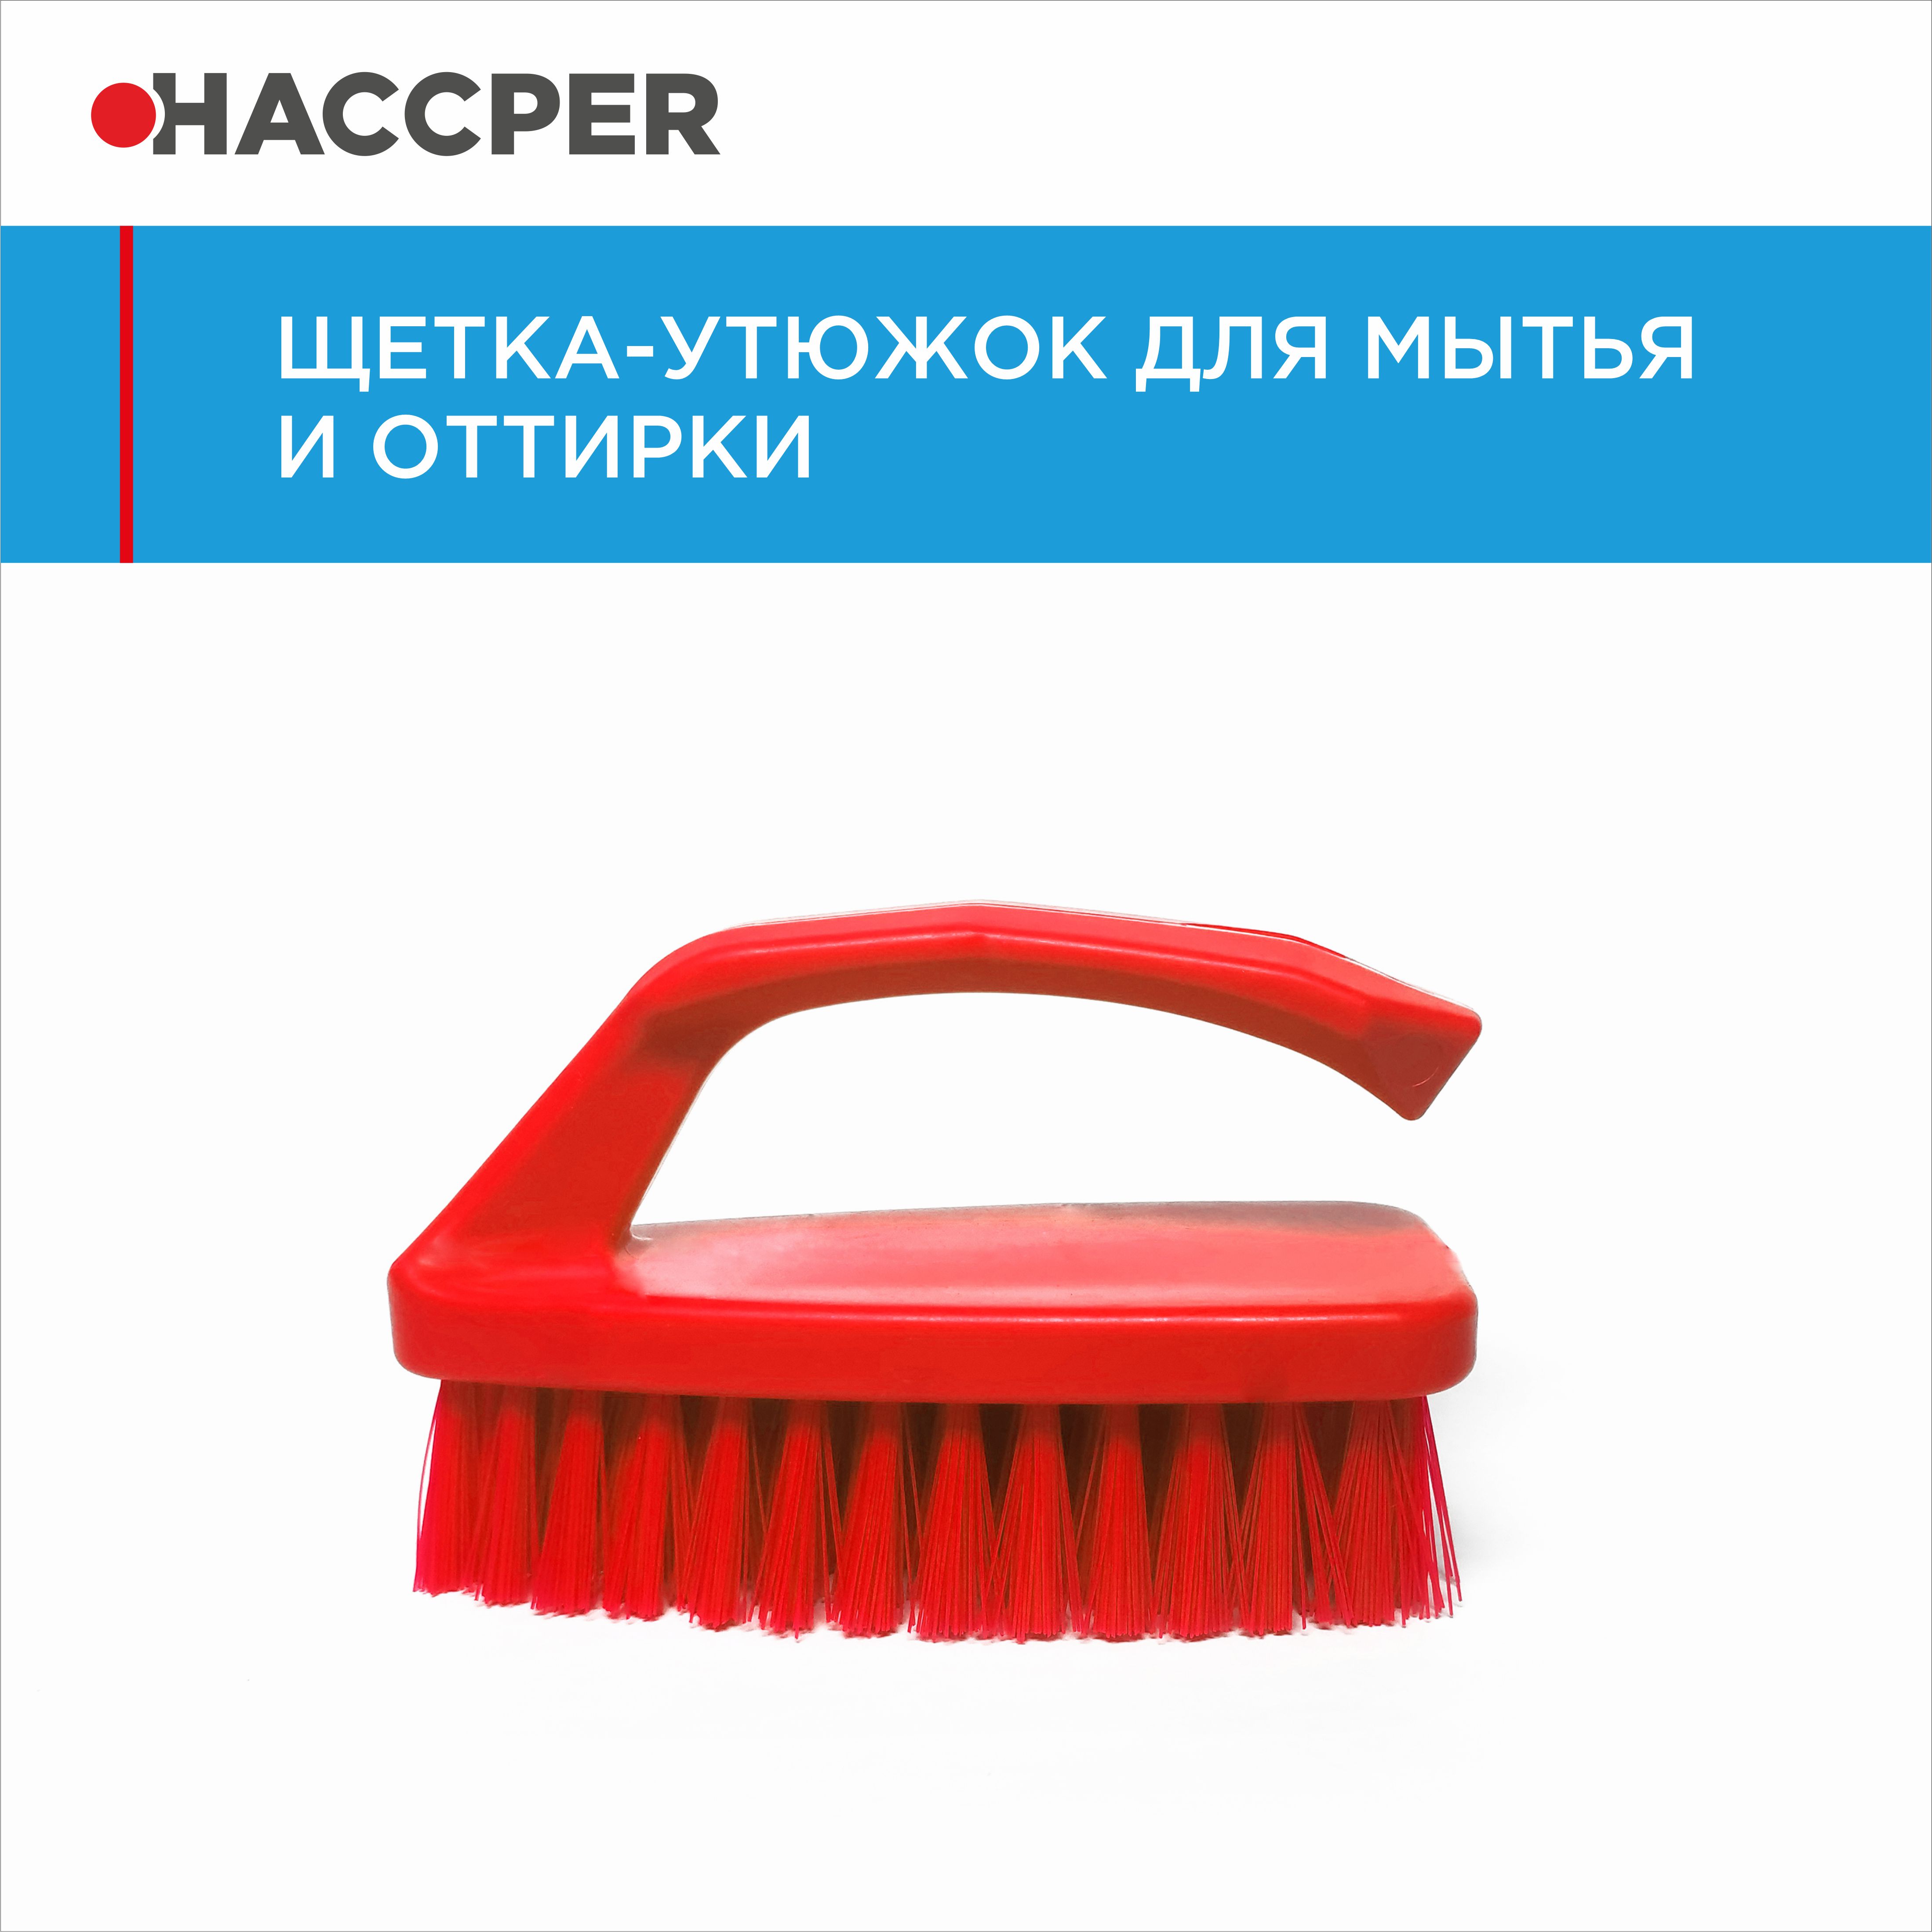 Щетка-утюжок HACCPER для мытья и оттирки, красный